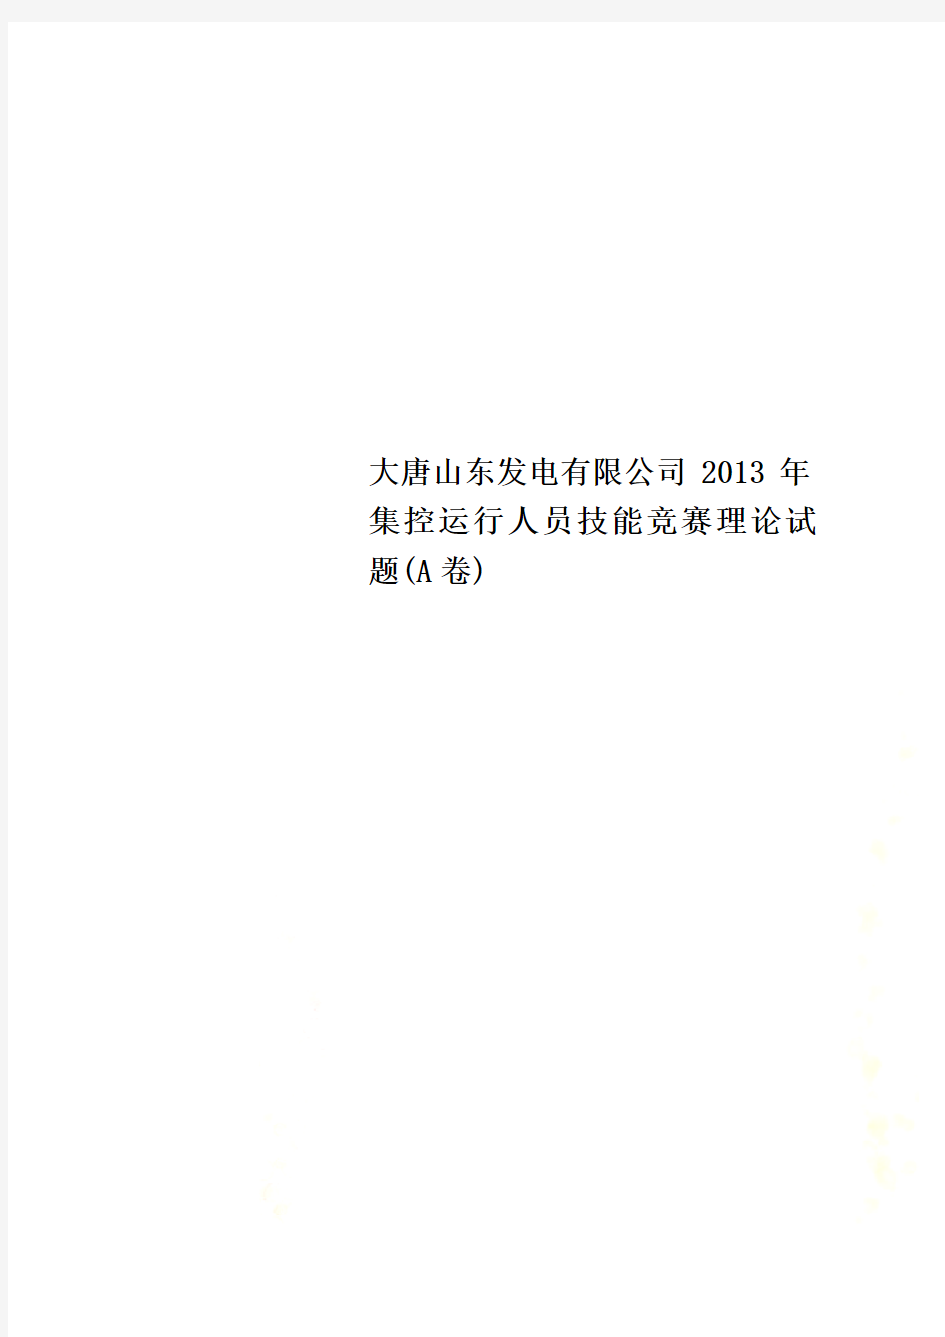 大唐山东发电有限公司2013年集控运行人员技能竞赛理论试题(A卷)